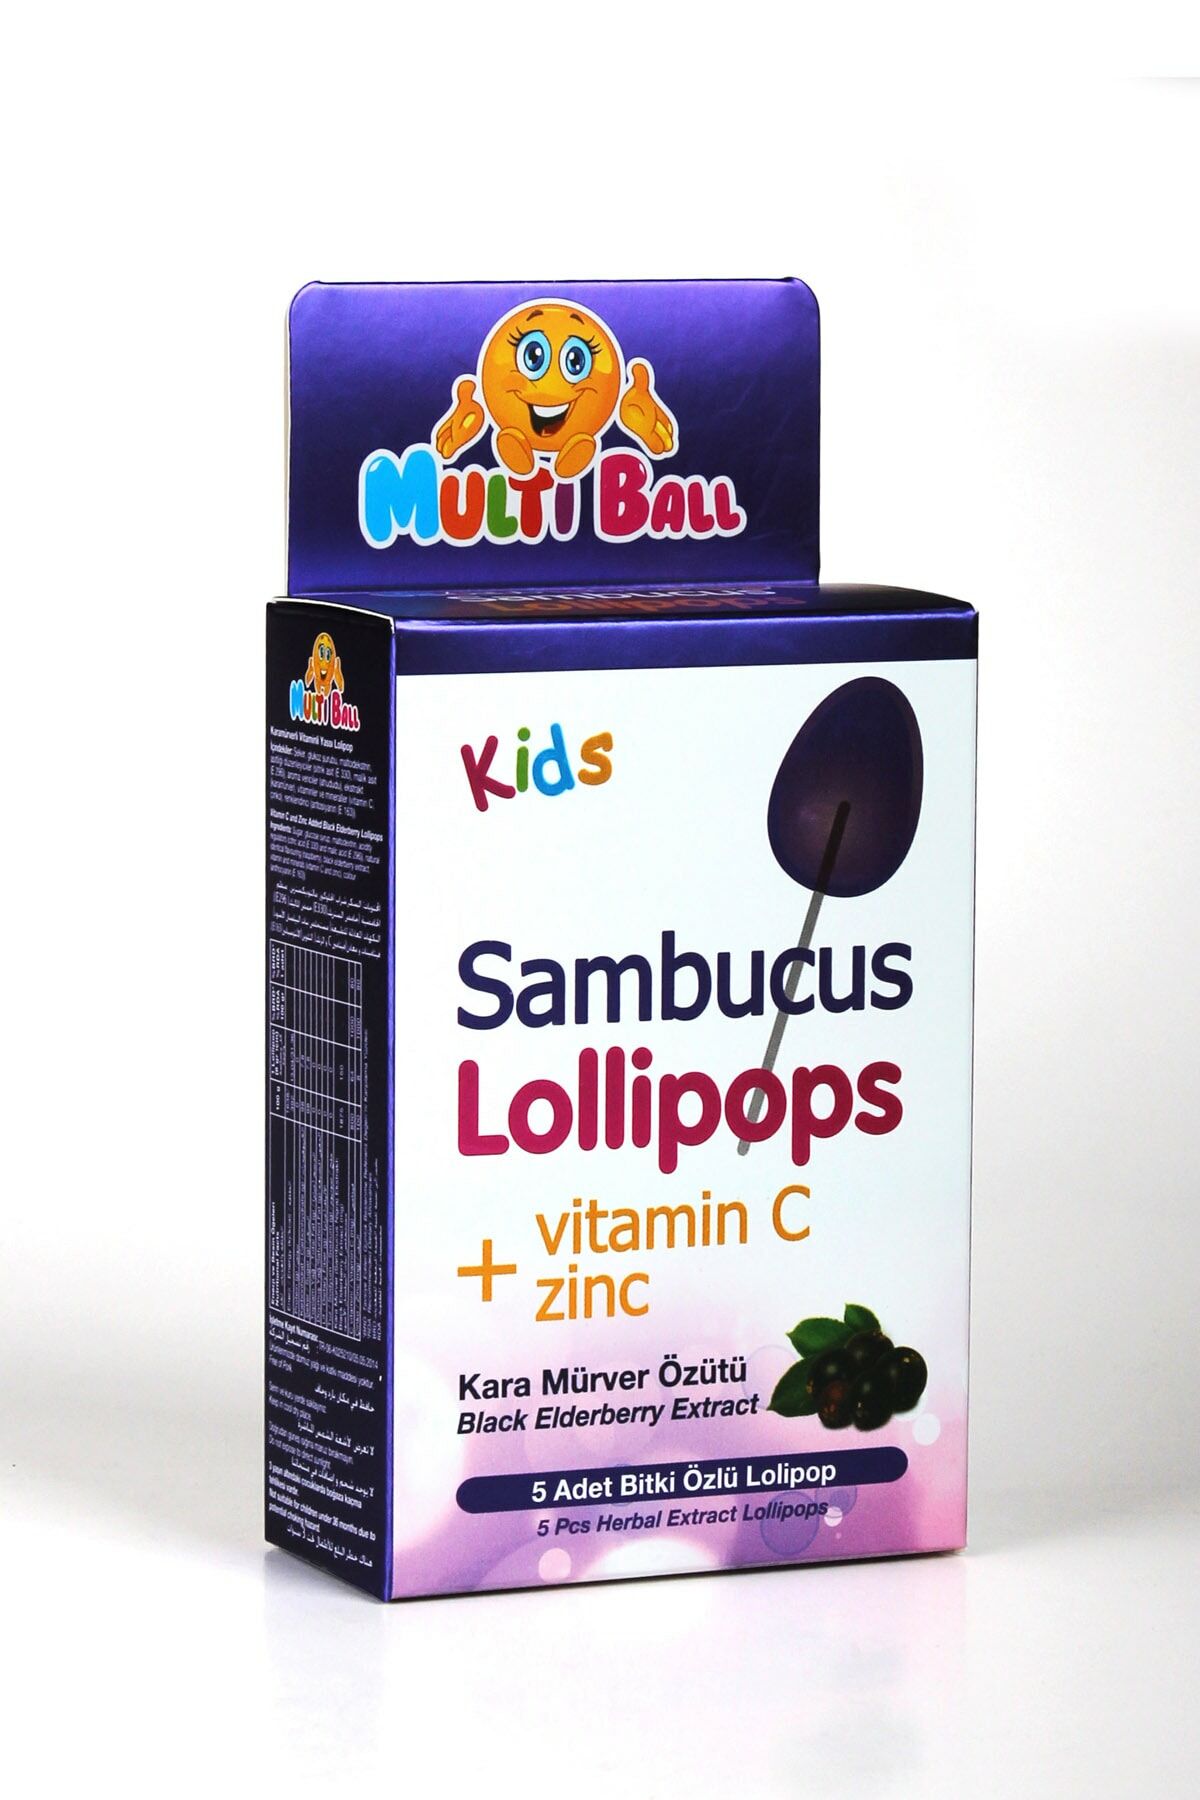 Multiball Kids Sambucus Lollipops Vitamin C Çinko Bitki Özlü Lollipop 5'li